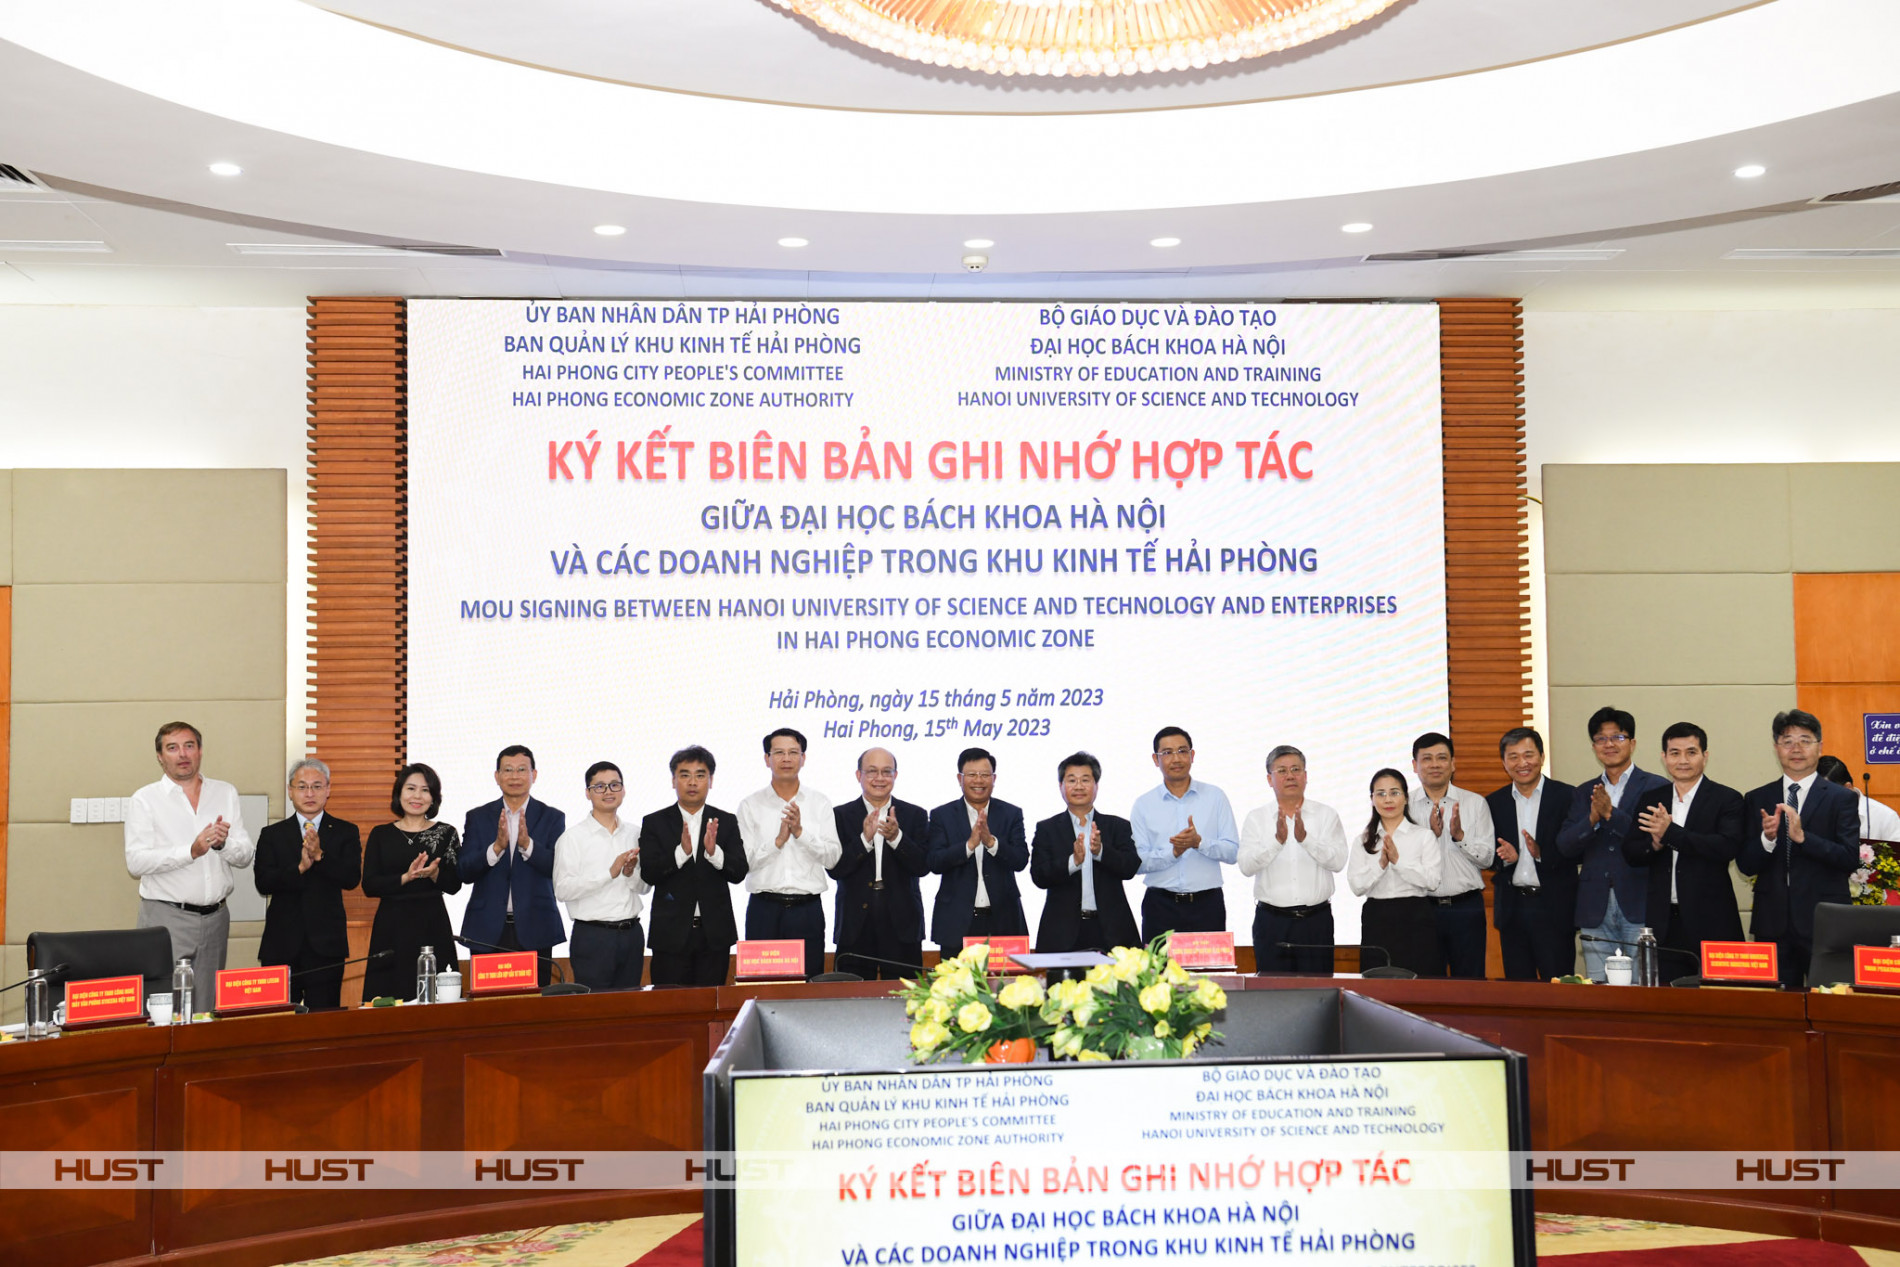 Đại học Bách khoa Hà Nội ký kết hợp tác với các doanh nghiệp trong khu công nghiệp, khu kinh tế Hải Phòng